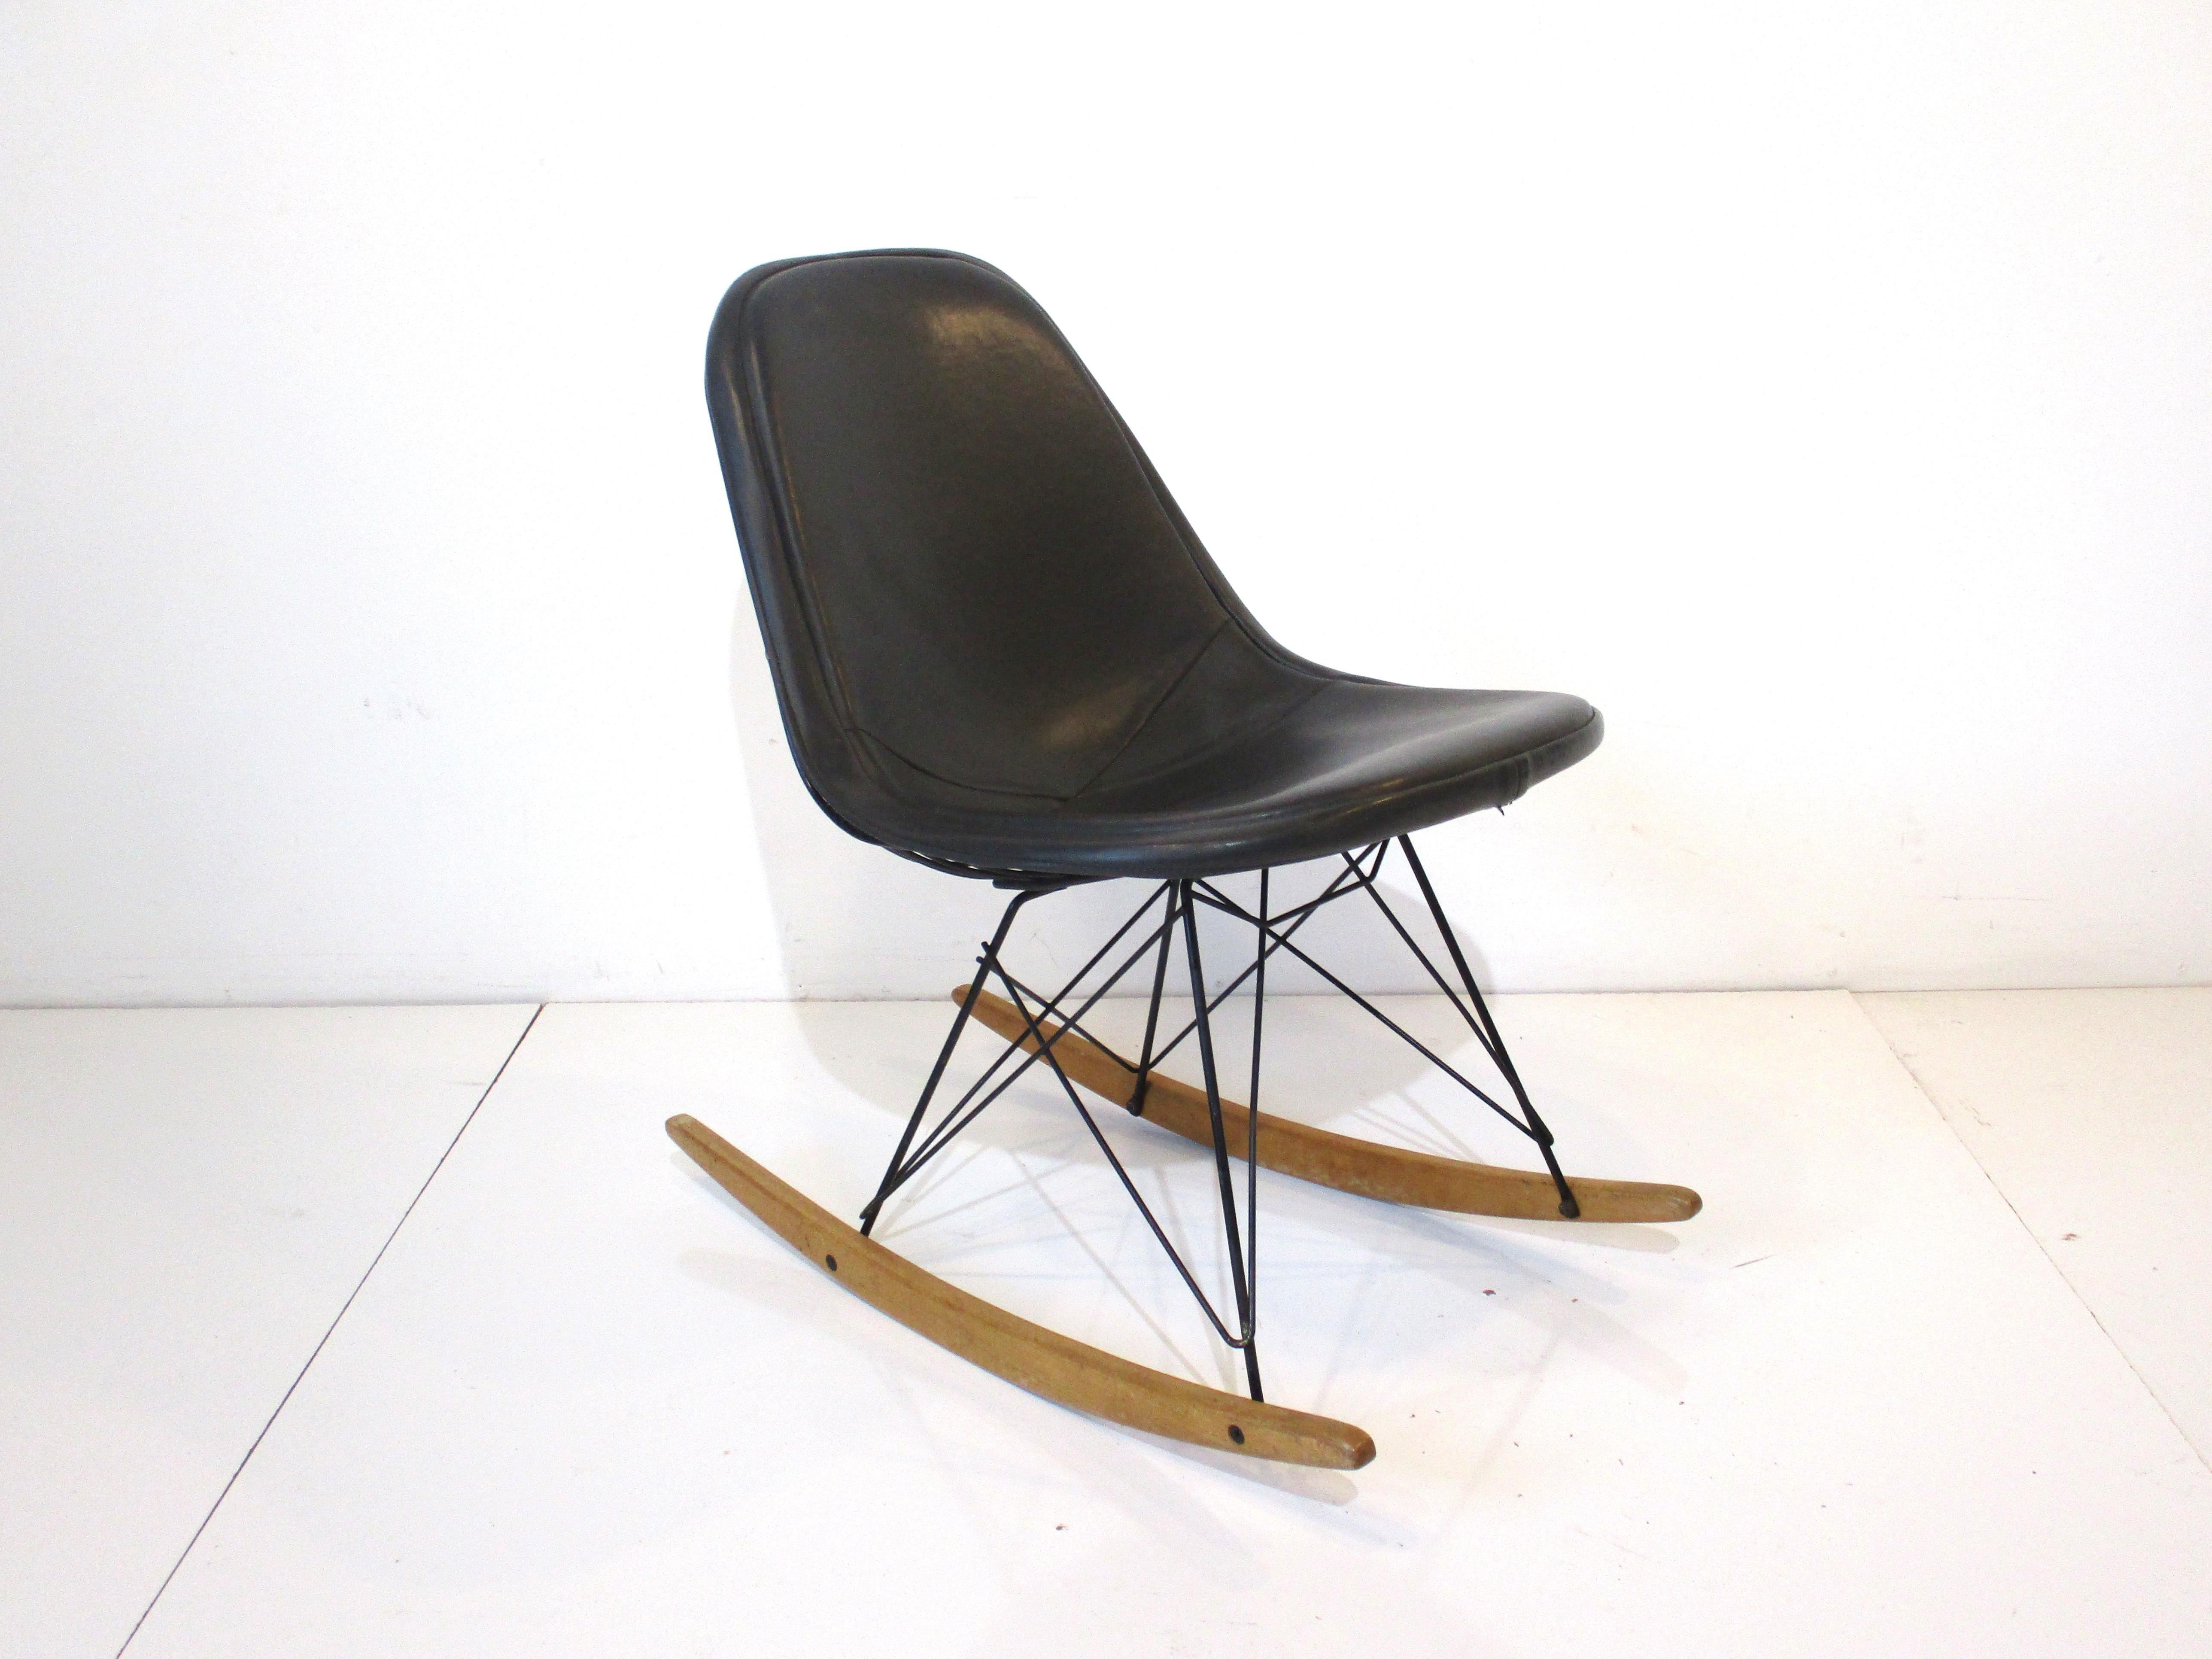 Rare rocking-chair Eames en fil de métal noir satiné avec des patins en bois de bouleau et un revêtement d'assise en Naugahyde anthracite foncé. La chaise conserve l'étiquette du tissu de la housse fabriquée par la société d'ameublement Herman